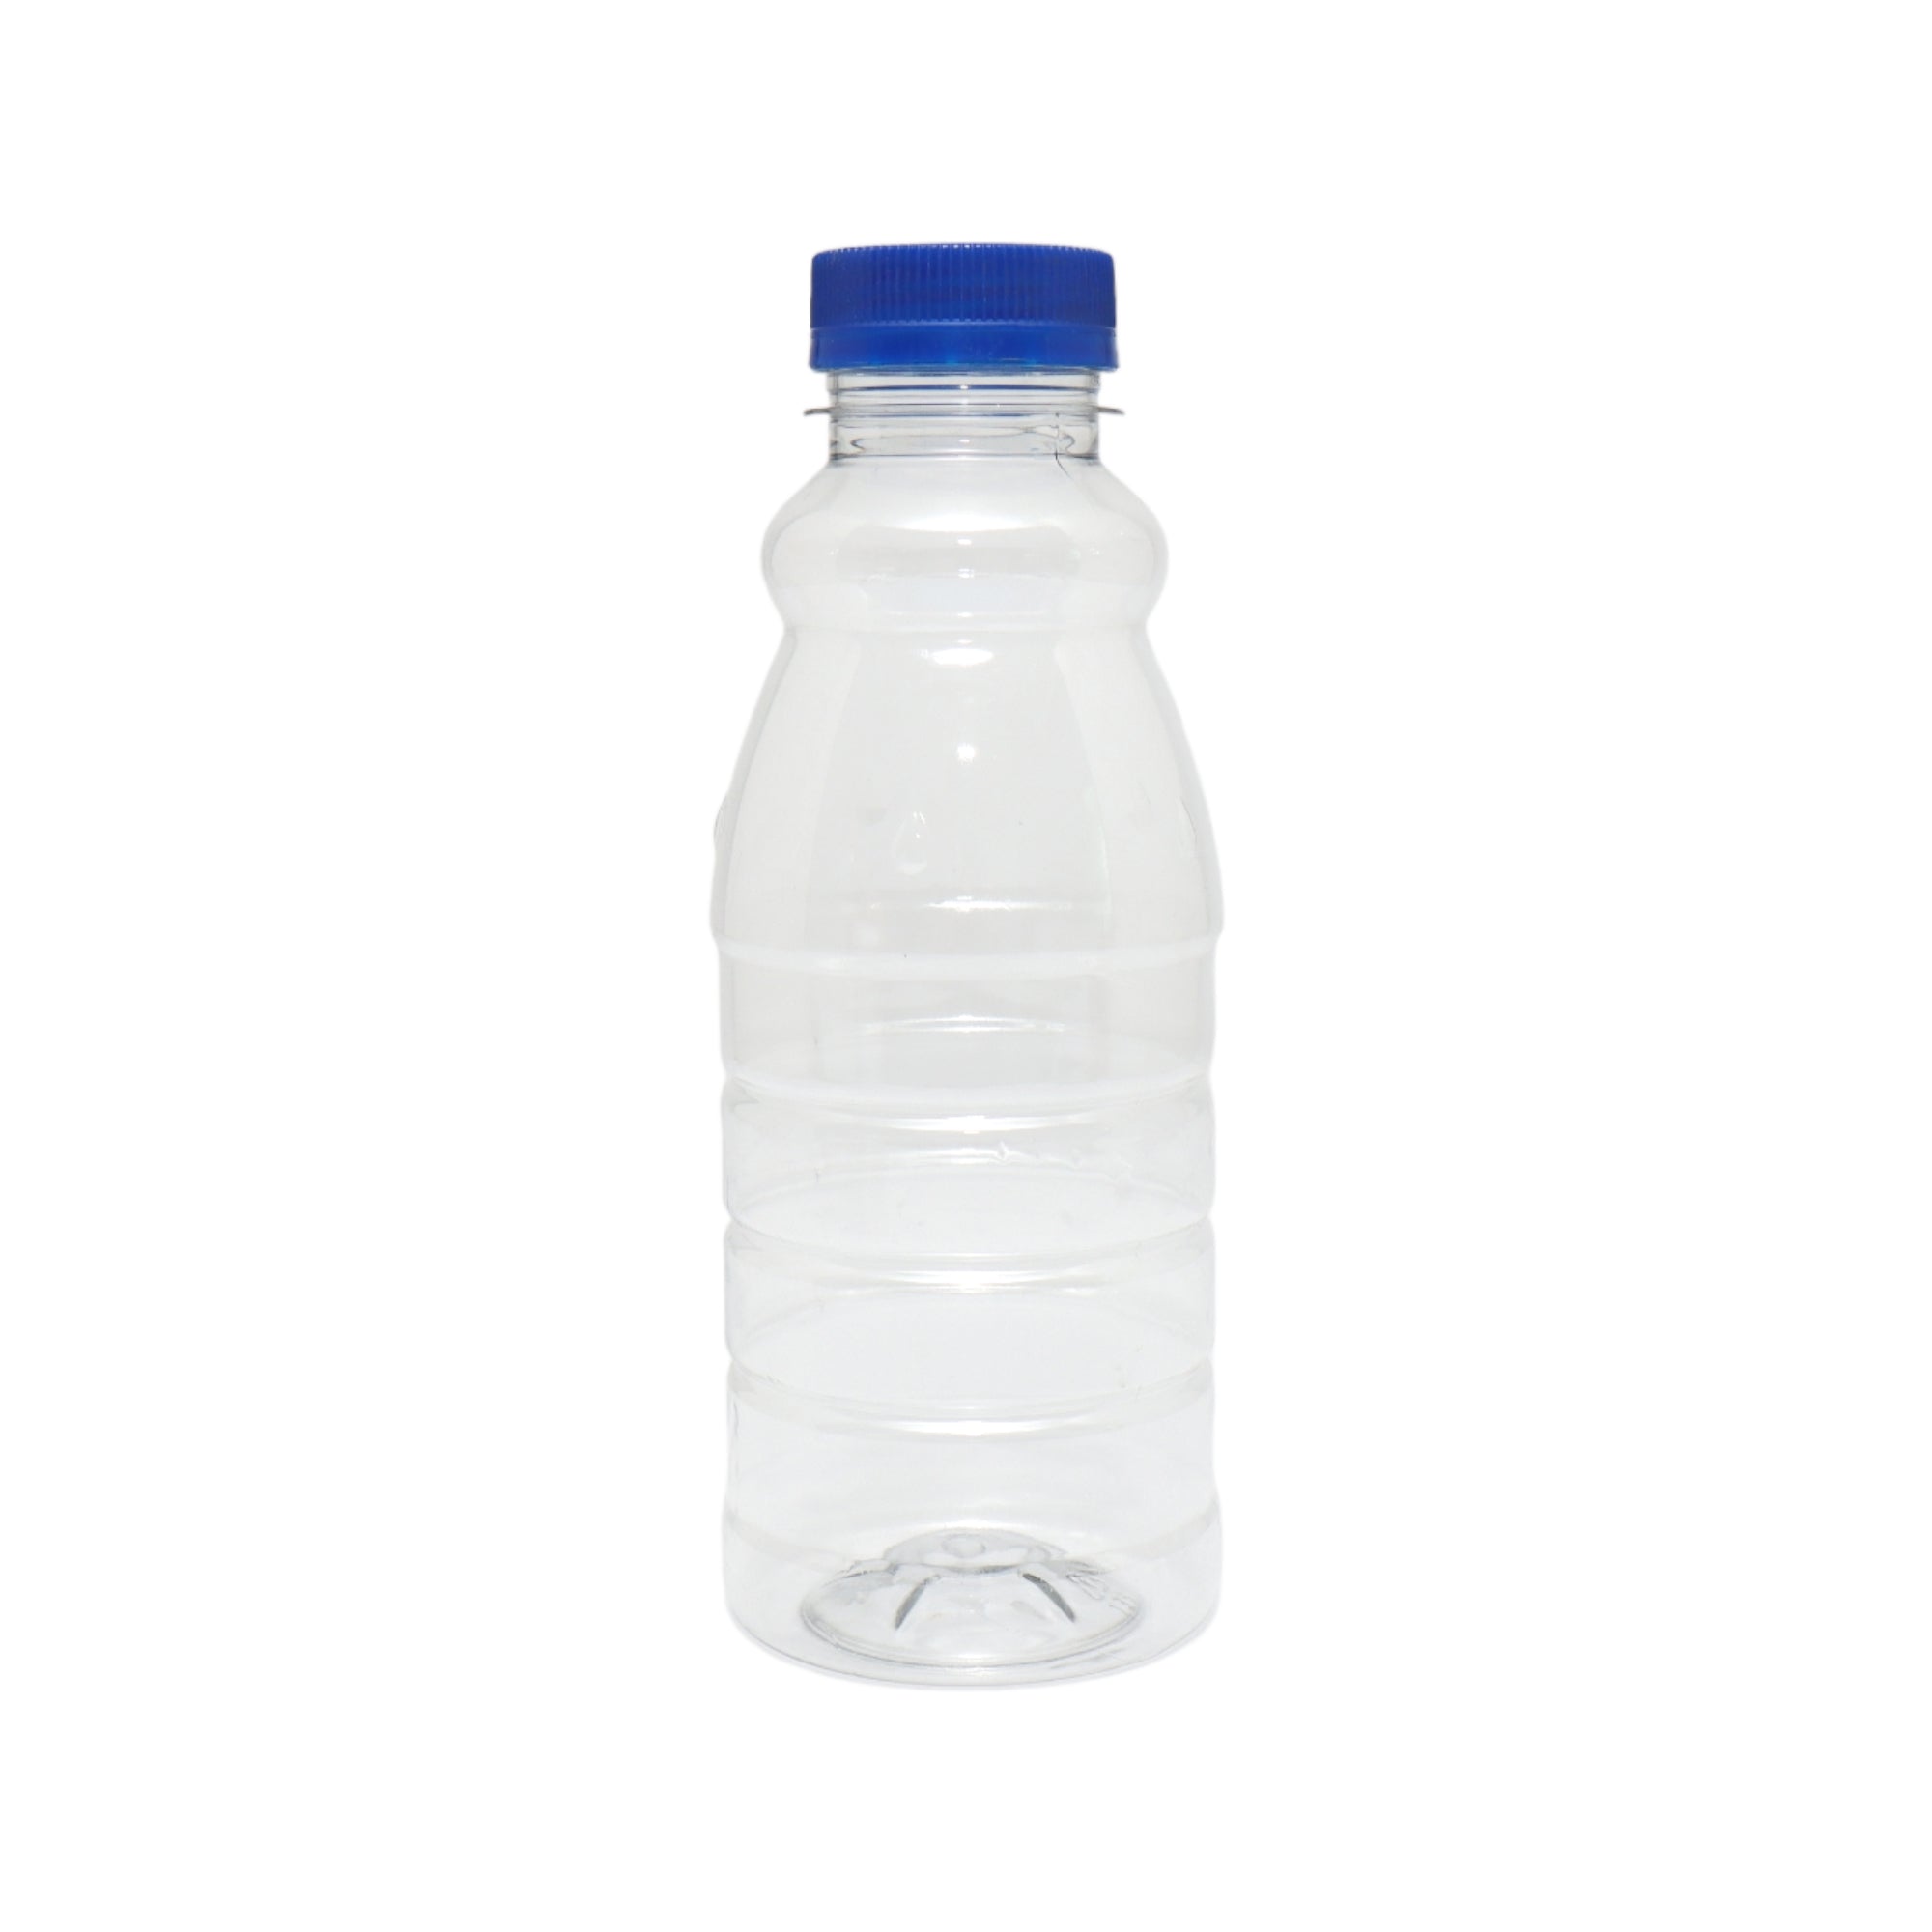 1L Plastic Bottle Juice/Sauce Clear with Lid